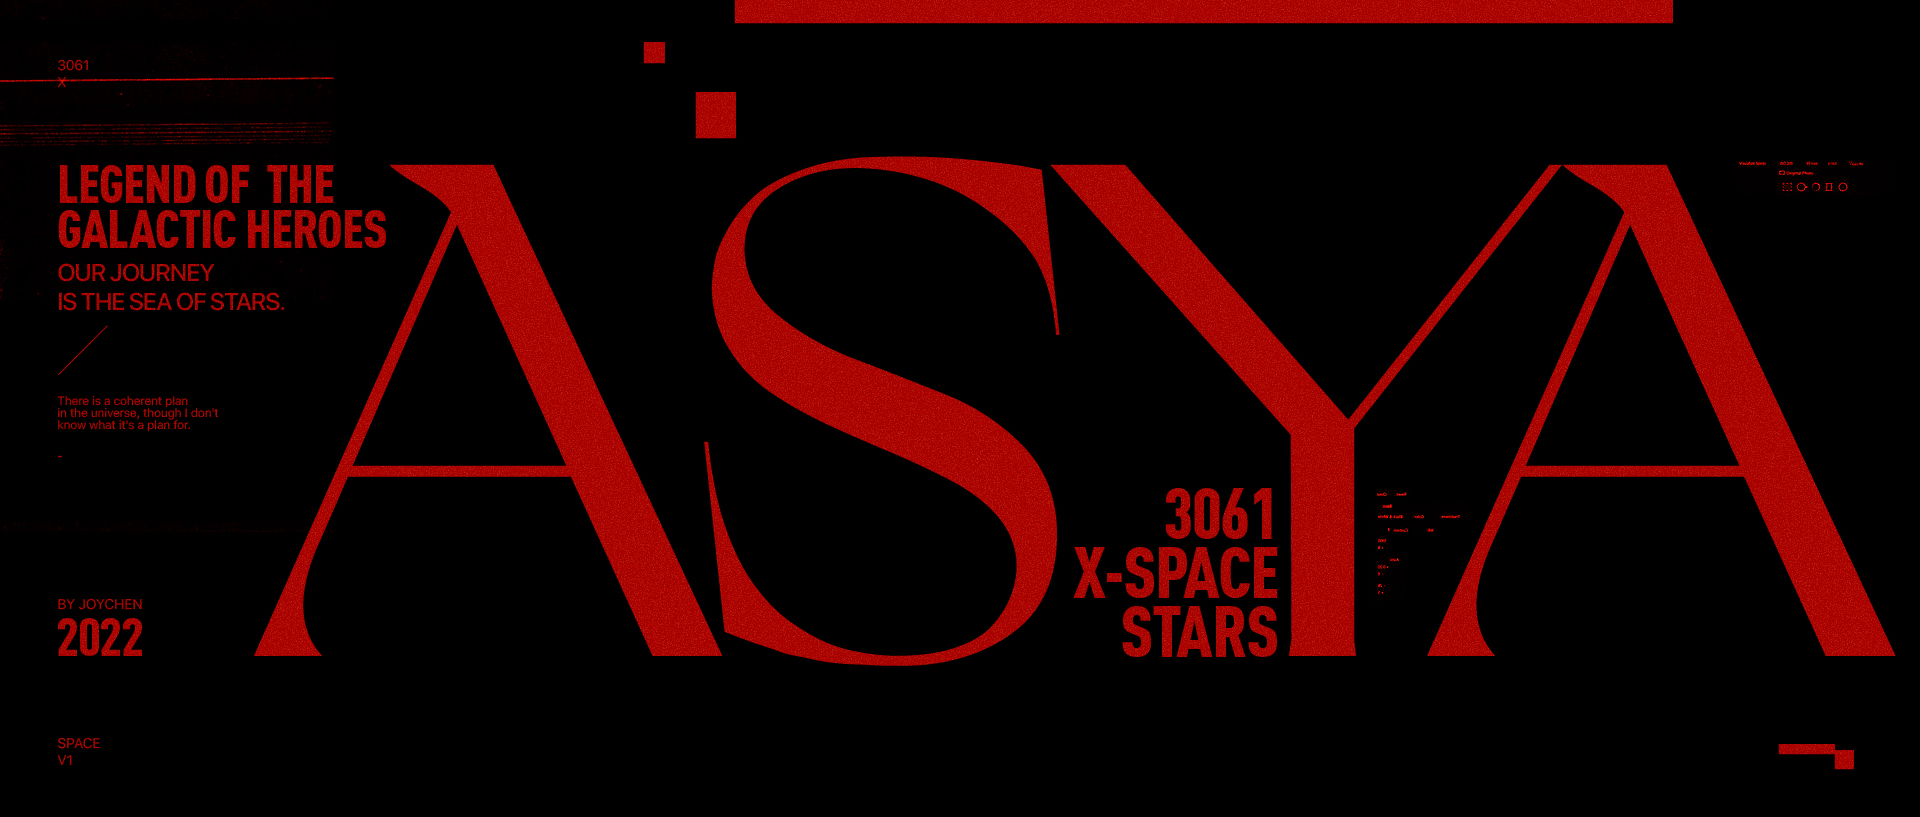 ASYA STAR